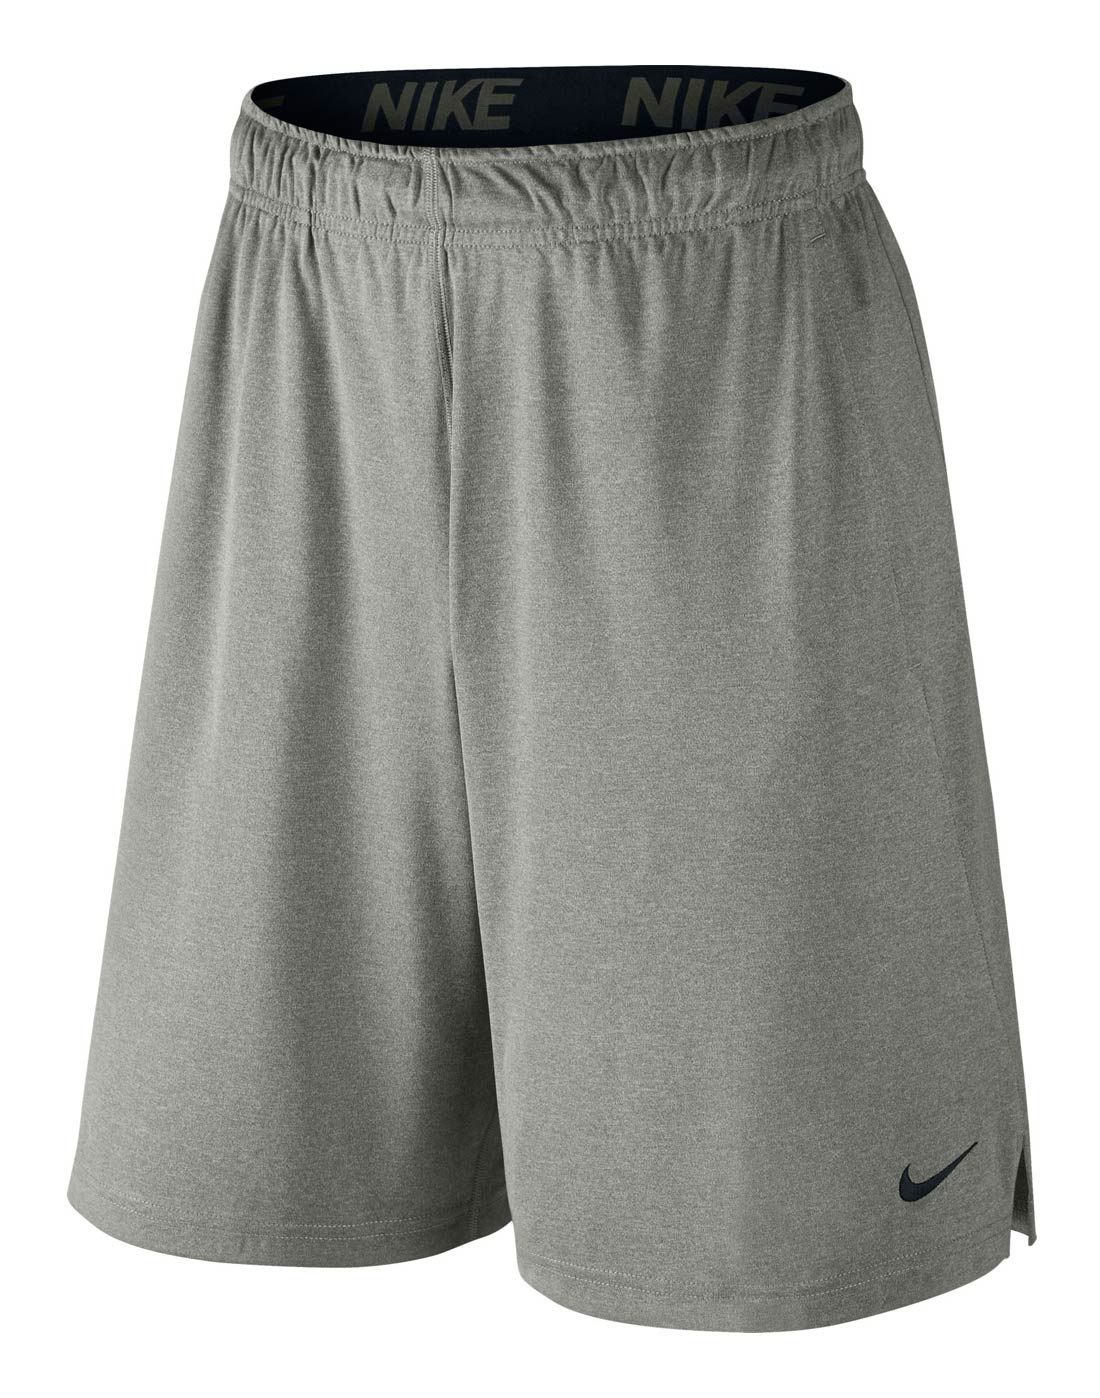 Men’s Nike Training Shorts | Grey | Life Style Sports